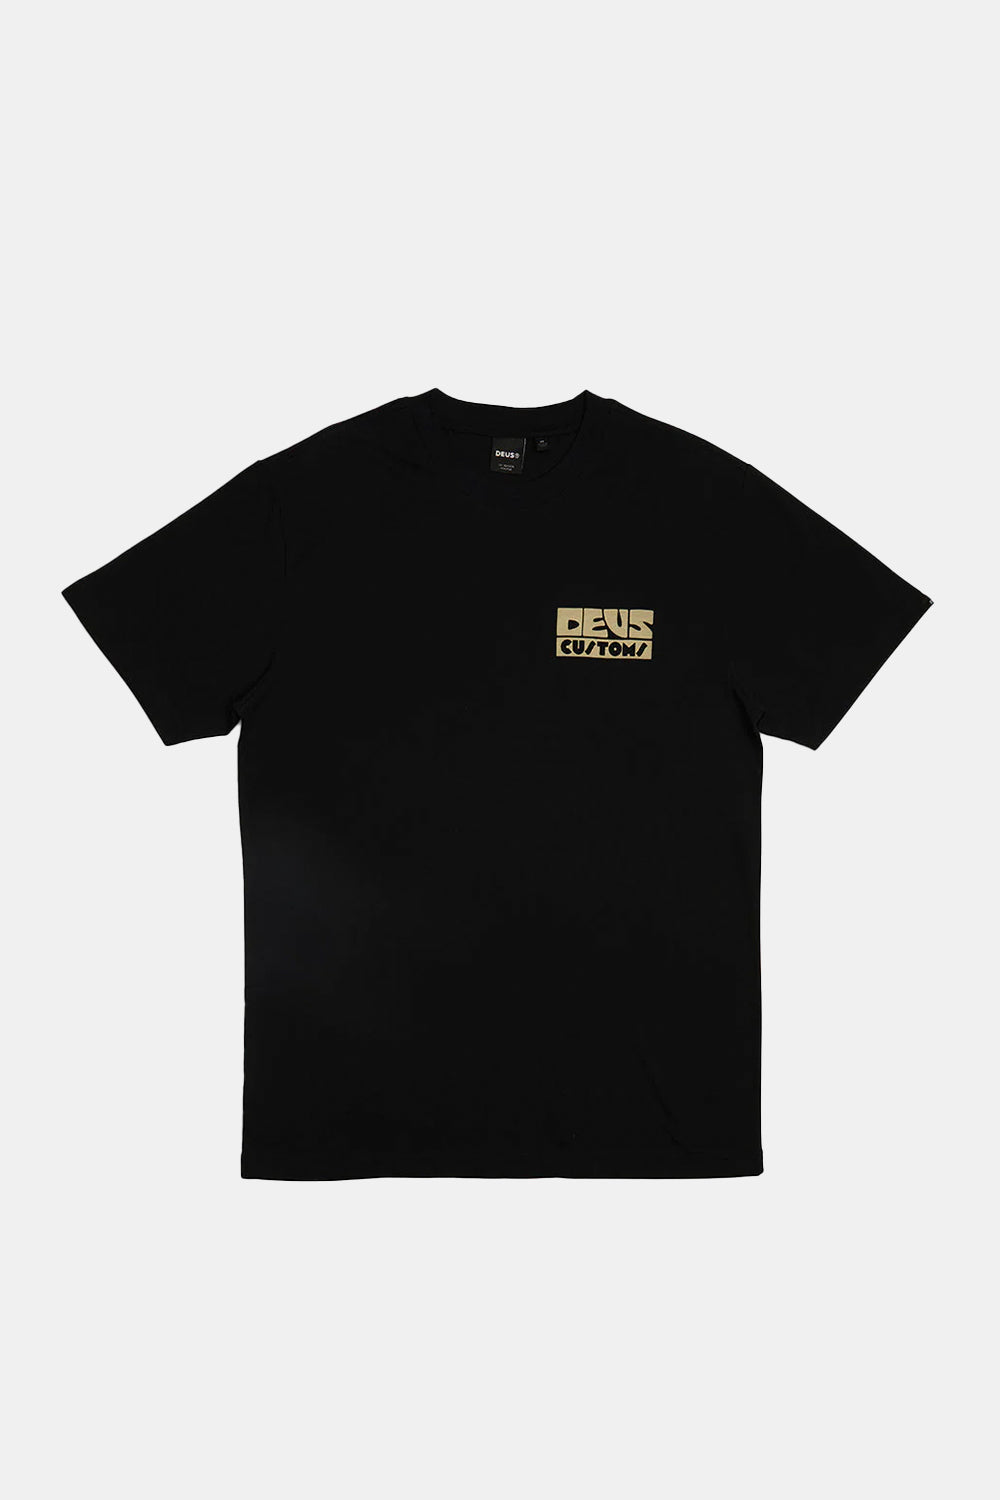 Deus Pushstart T-shirt (Black)
